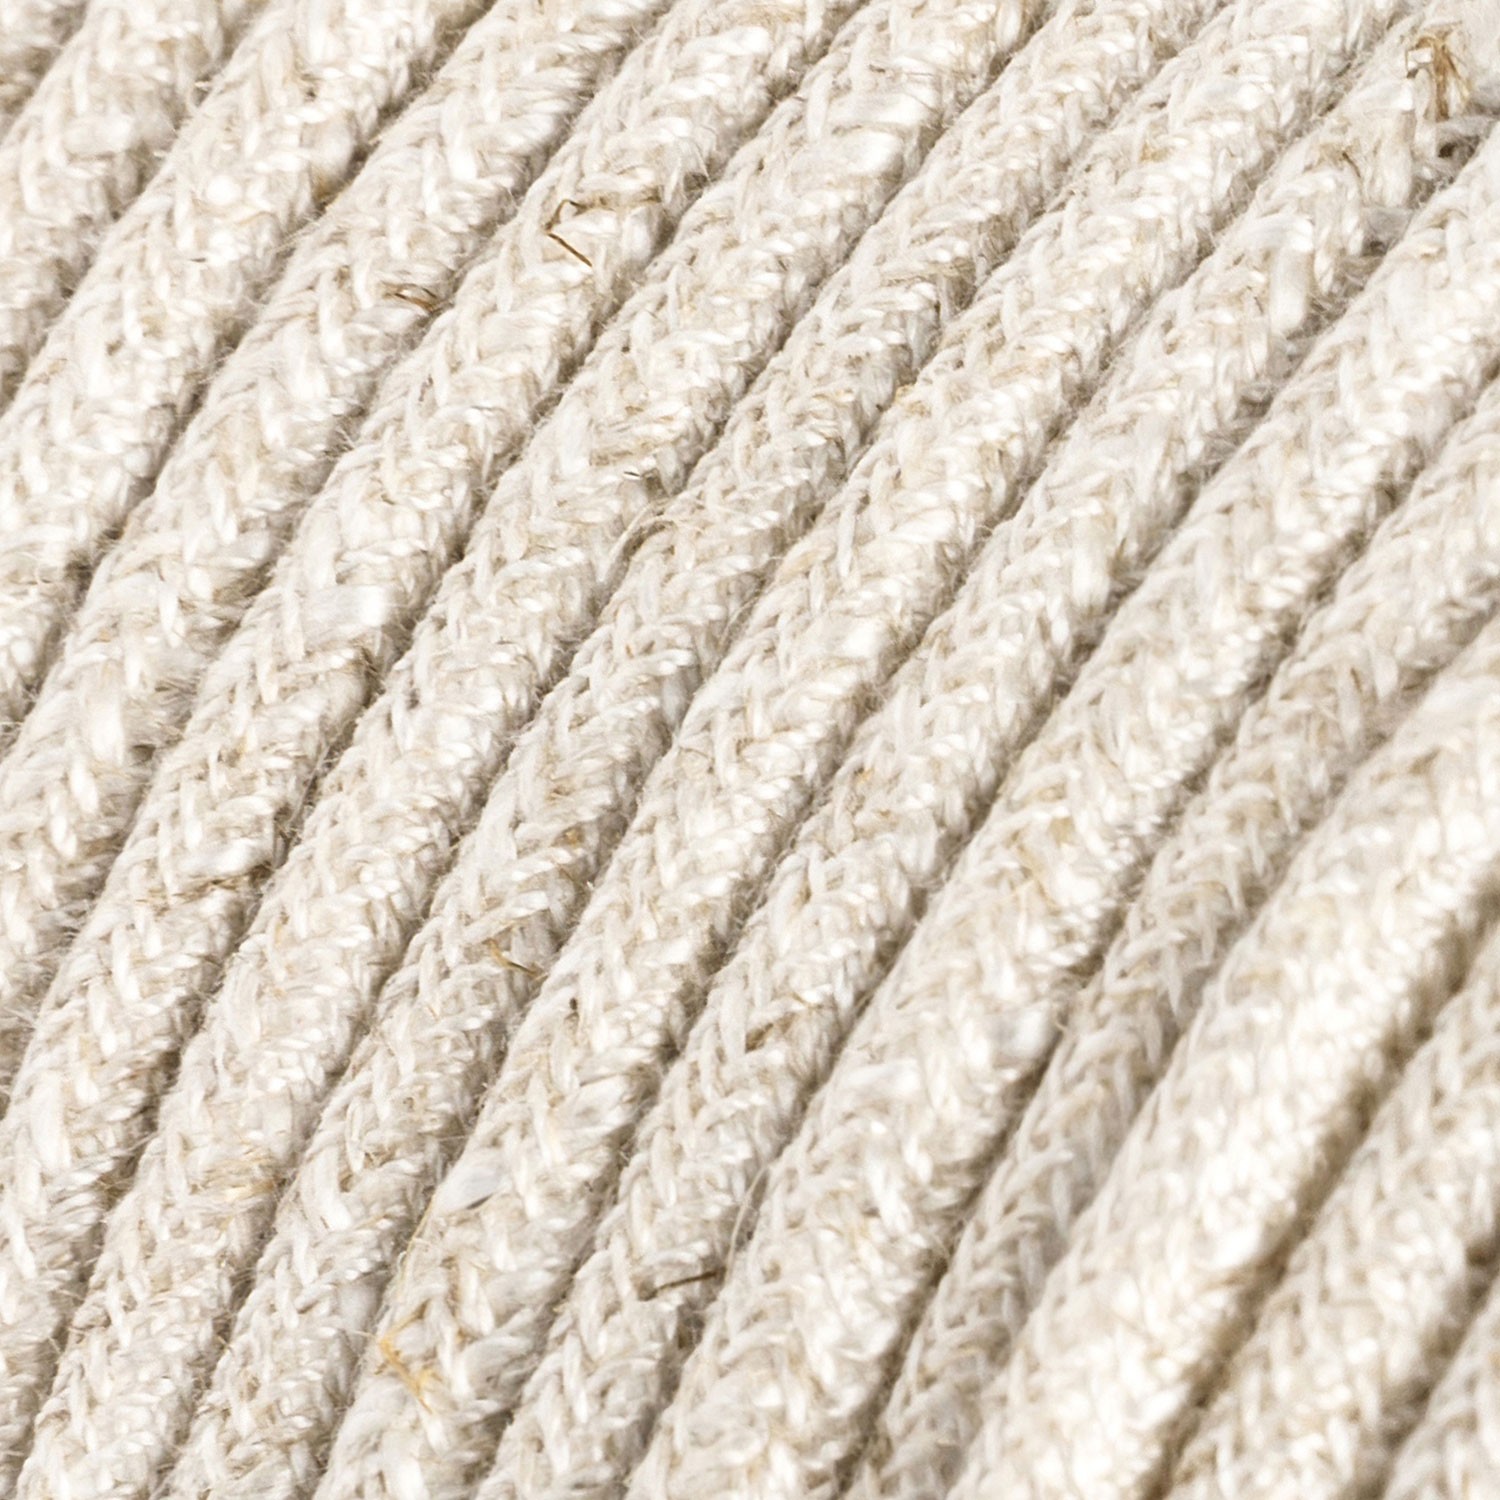 Okrúhly textilný elektrický kábel, ľan, prírodná neutrálna farba RN01